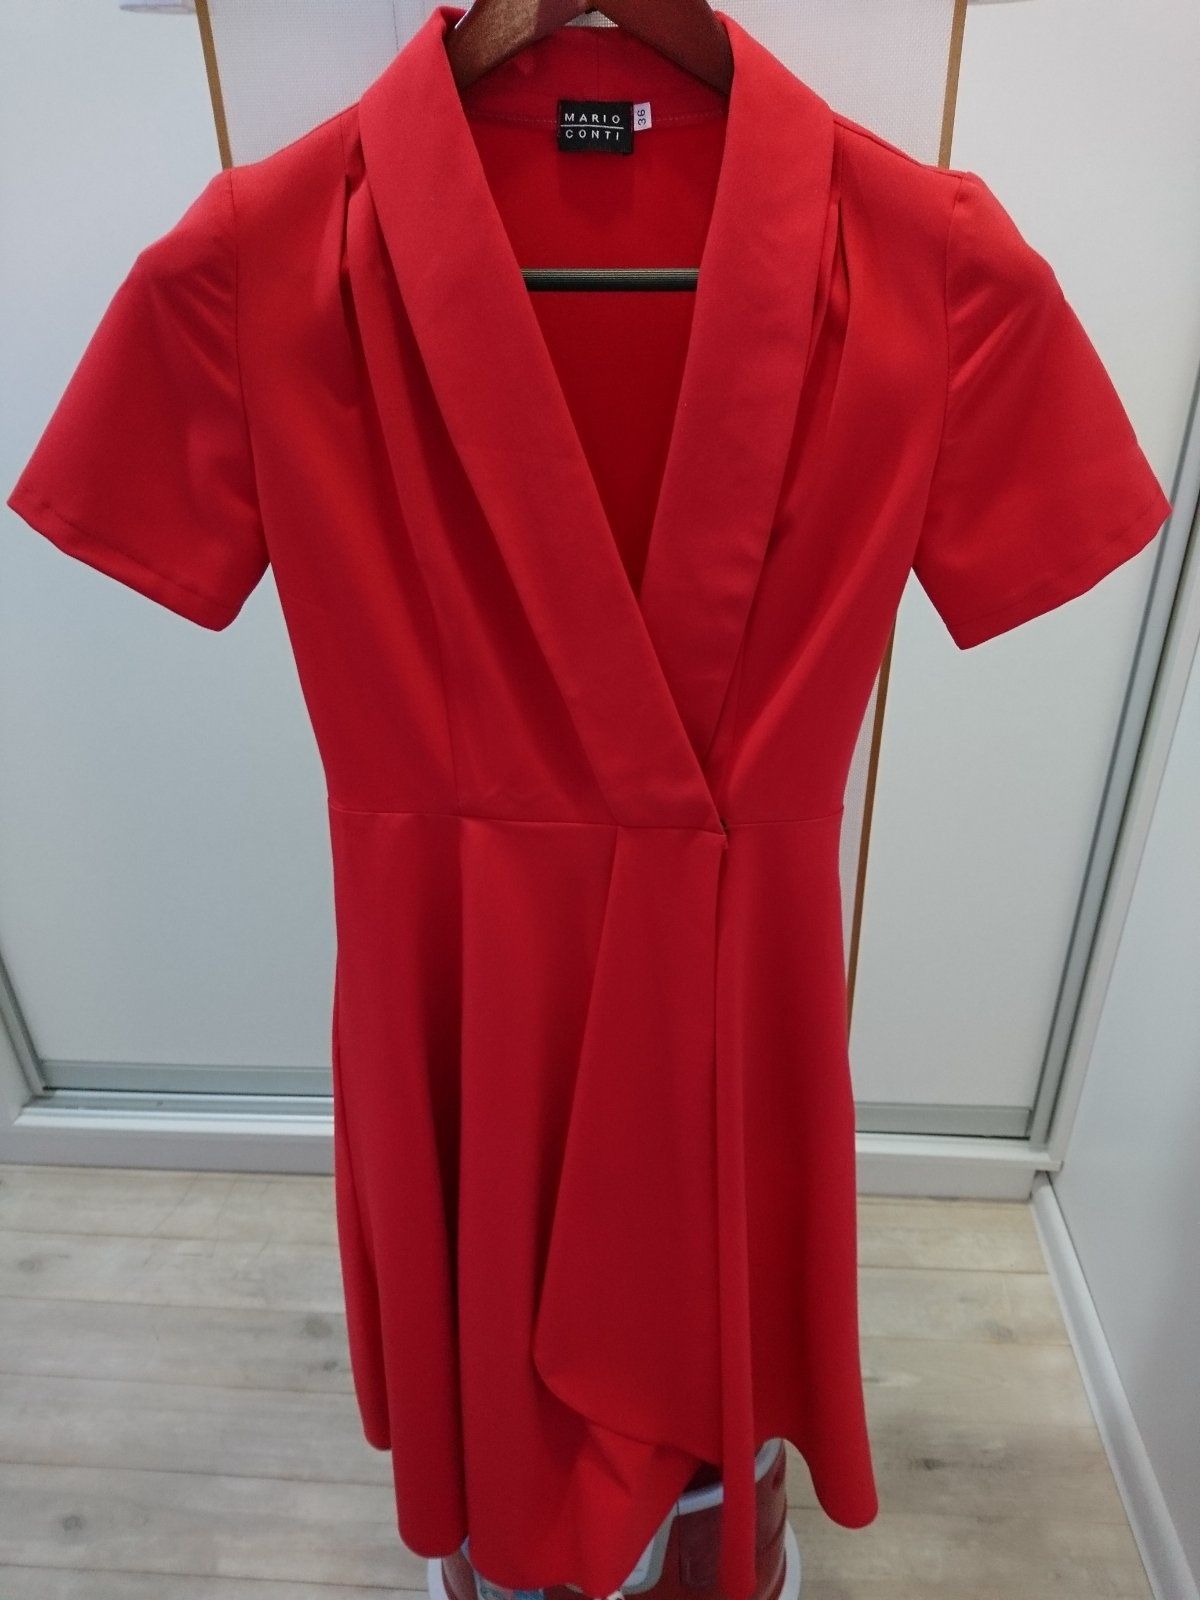 Распродажа гардероба! Красное платье Mario Conti / в горох/ пальто